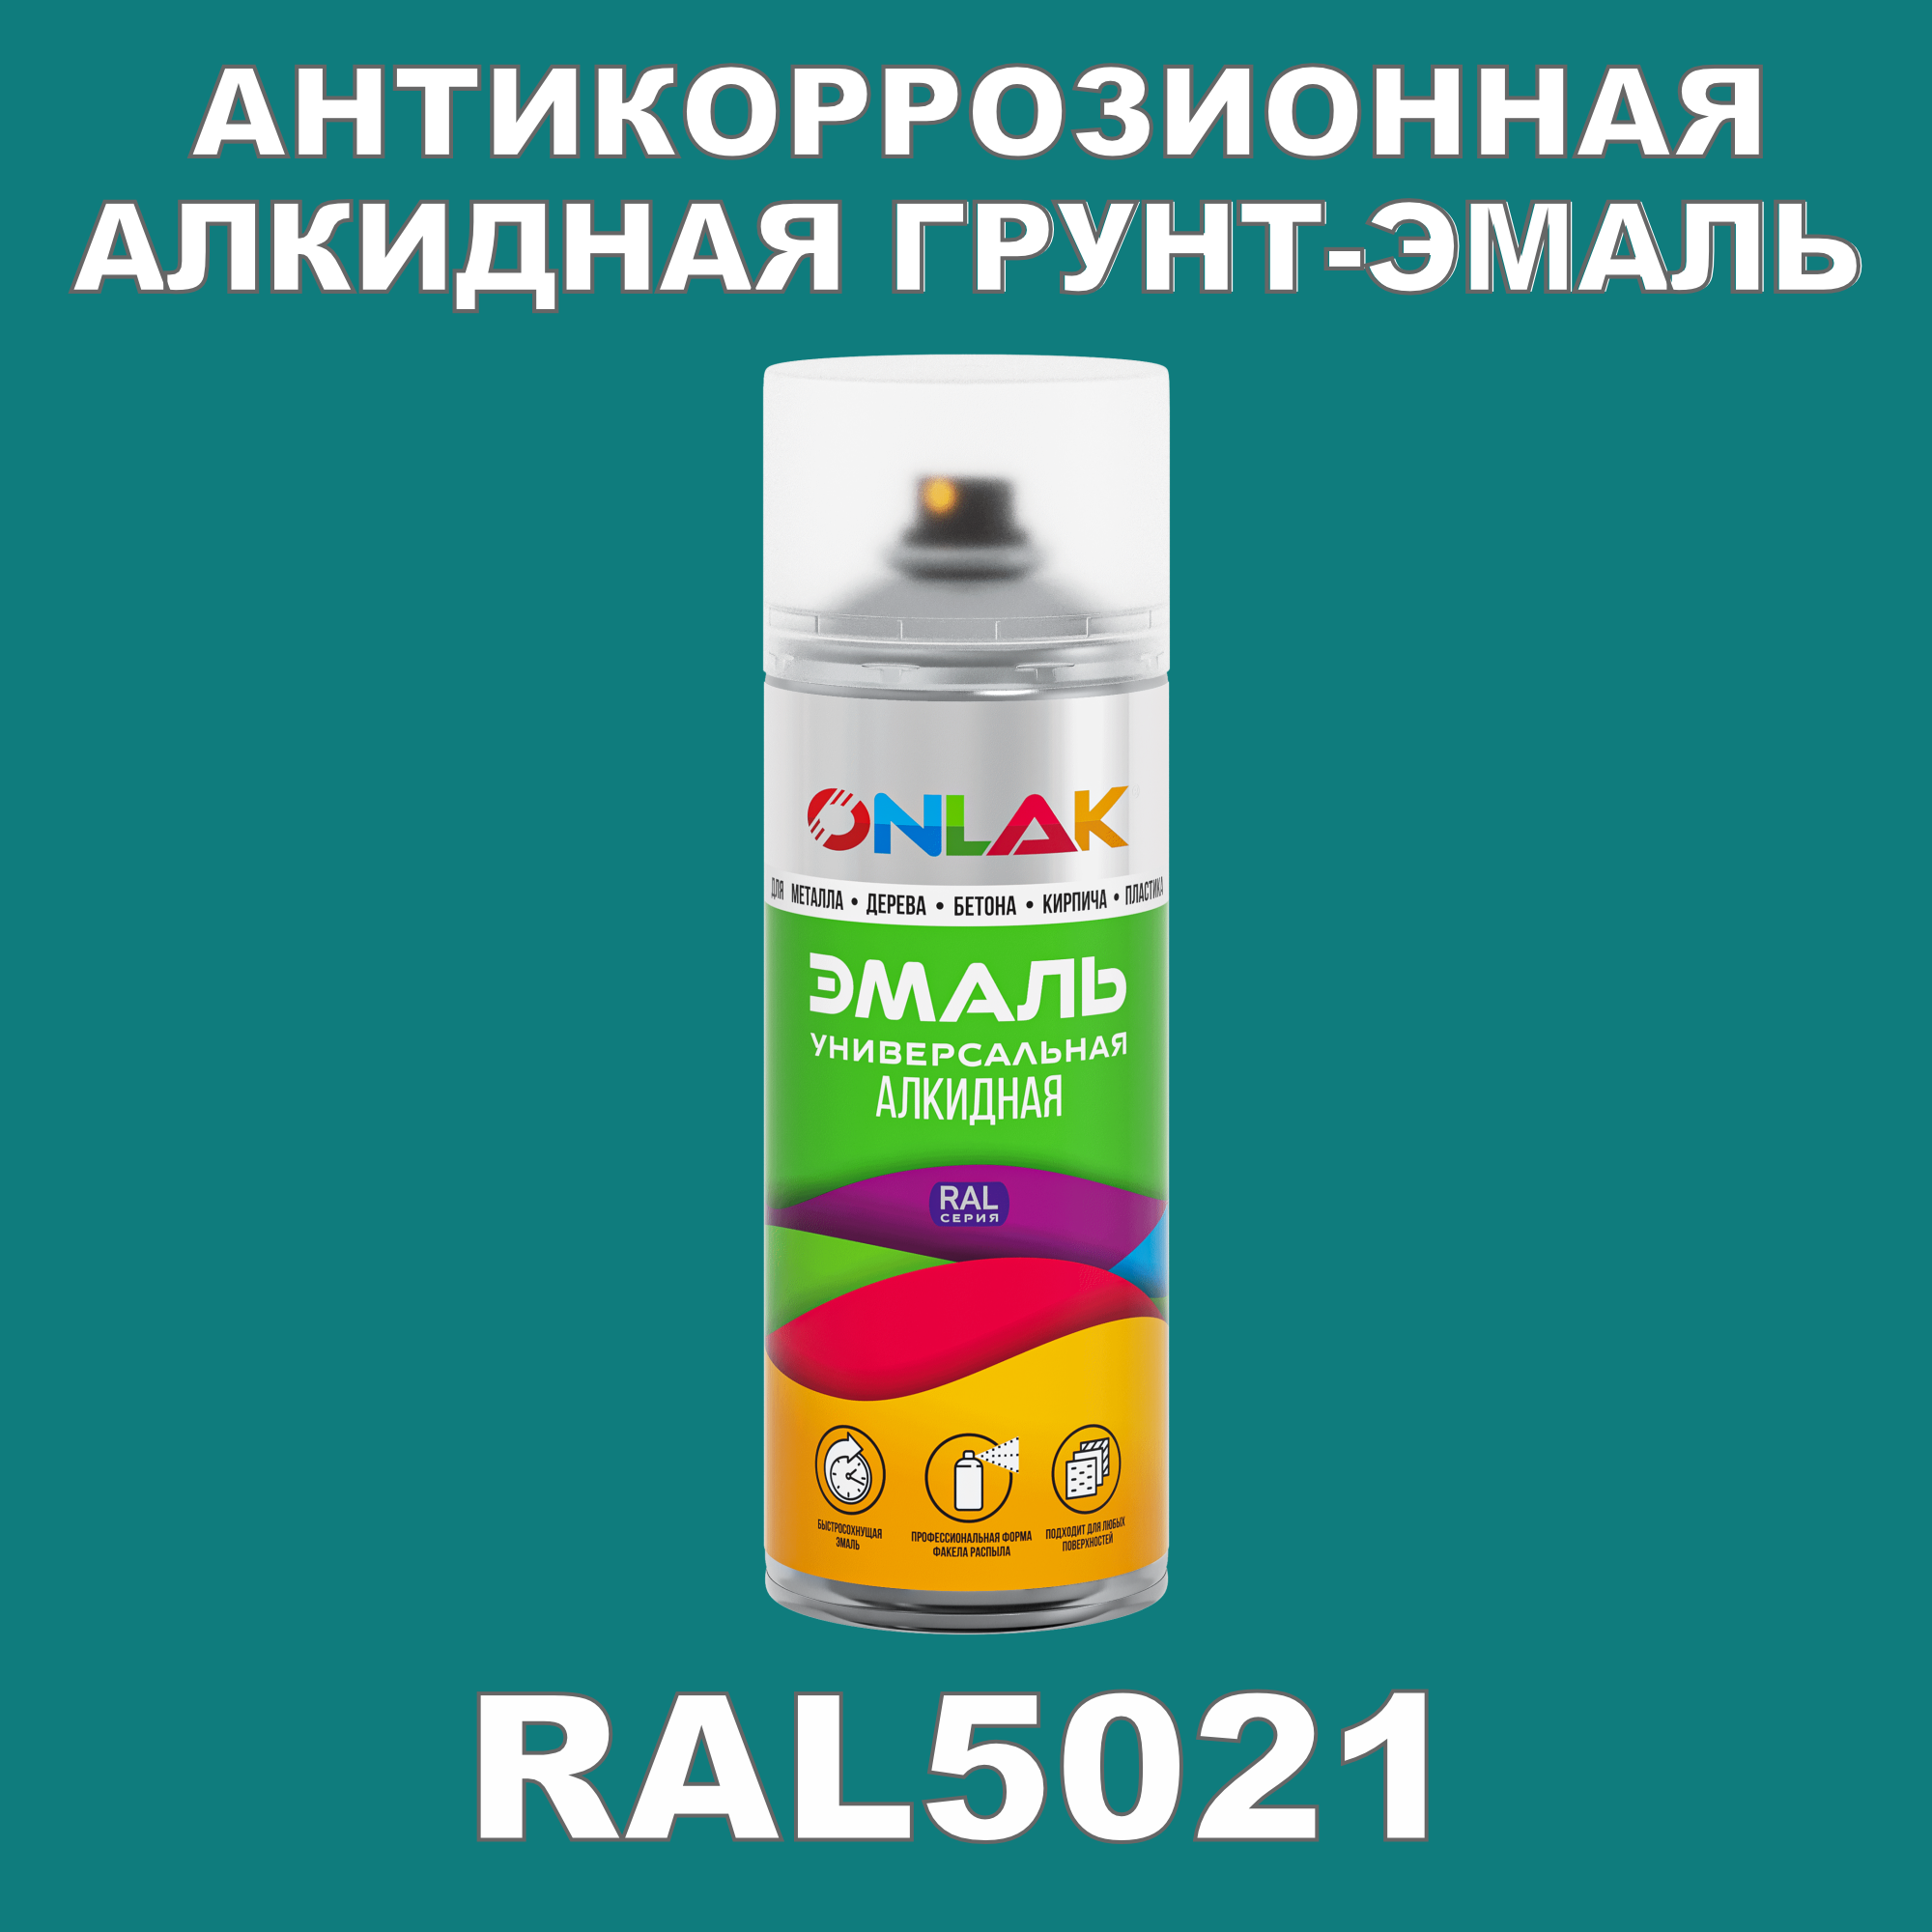 Антикоррозионная грунт-эмаль ONLAK RAL5021 полуматовая для металла и защиты от ржавчины эмаль аэрозольная inral universal бирюзовая ral5021 400 мл 26 7 6 029